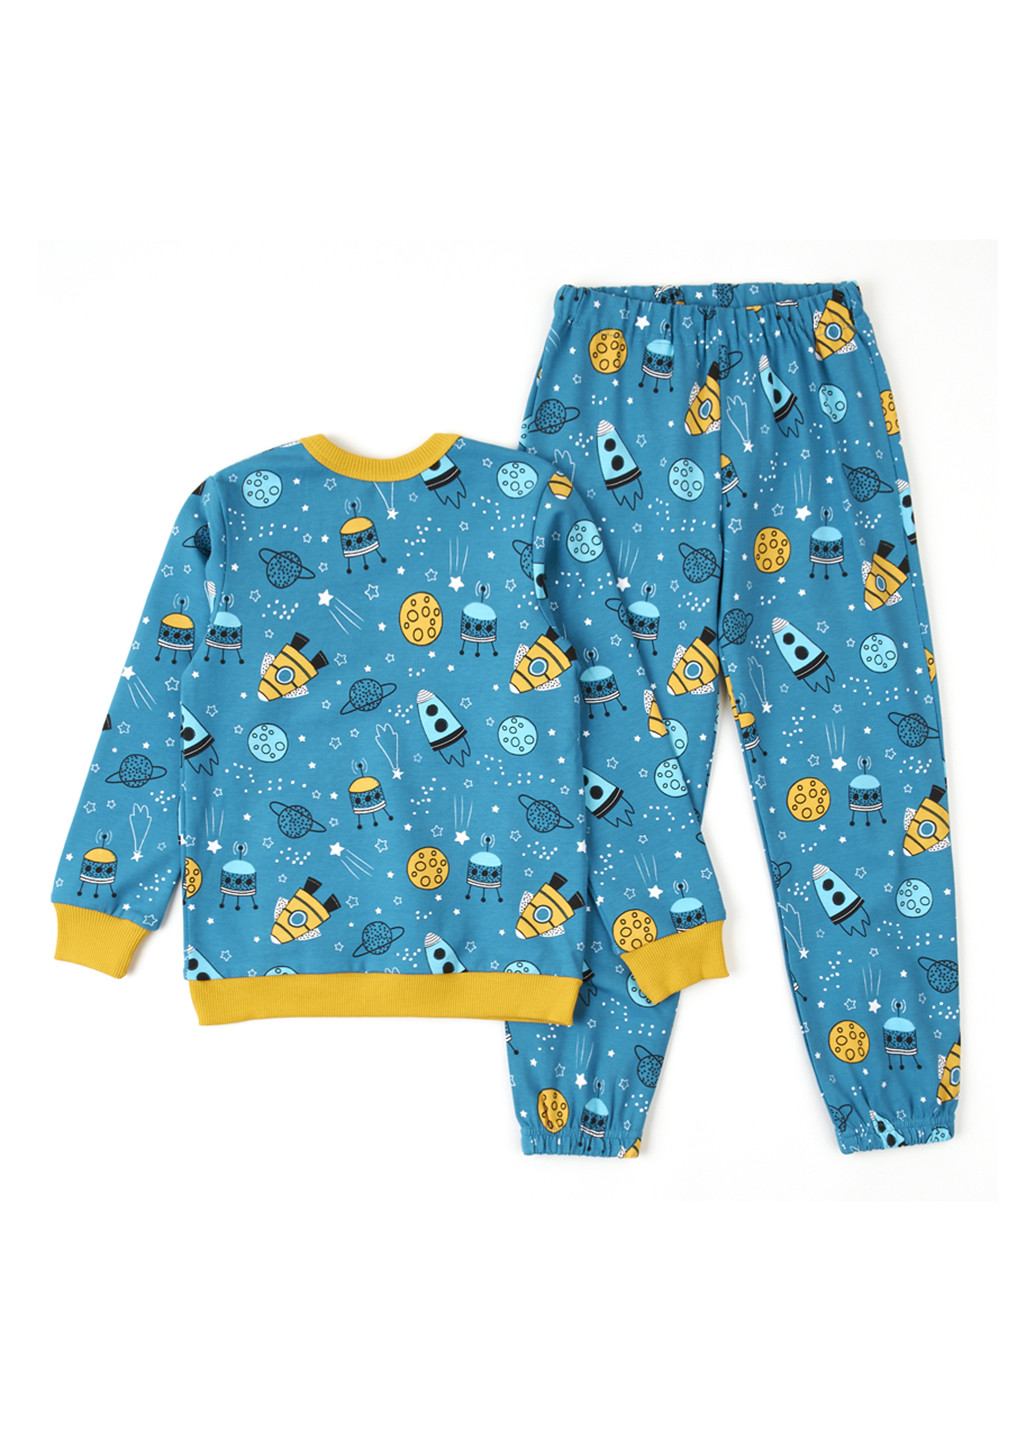 Темно-бирюзовая всесезон пижама (свитшот, брюки) свитшот + брюки Ляля